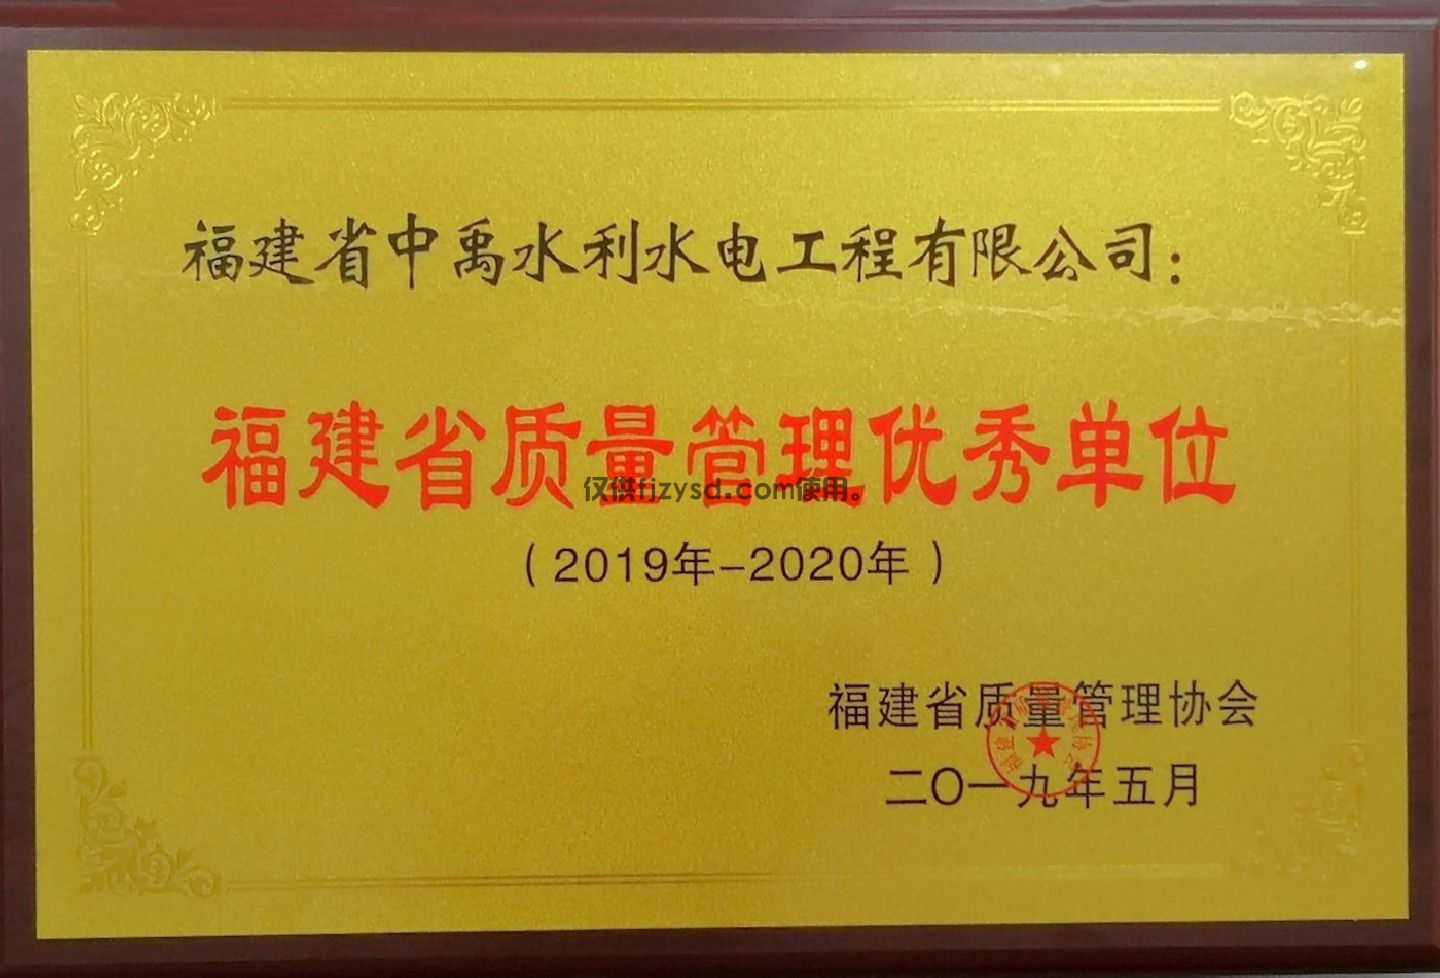 2019-2020年福建省质量管理优秀单位(图1)